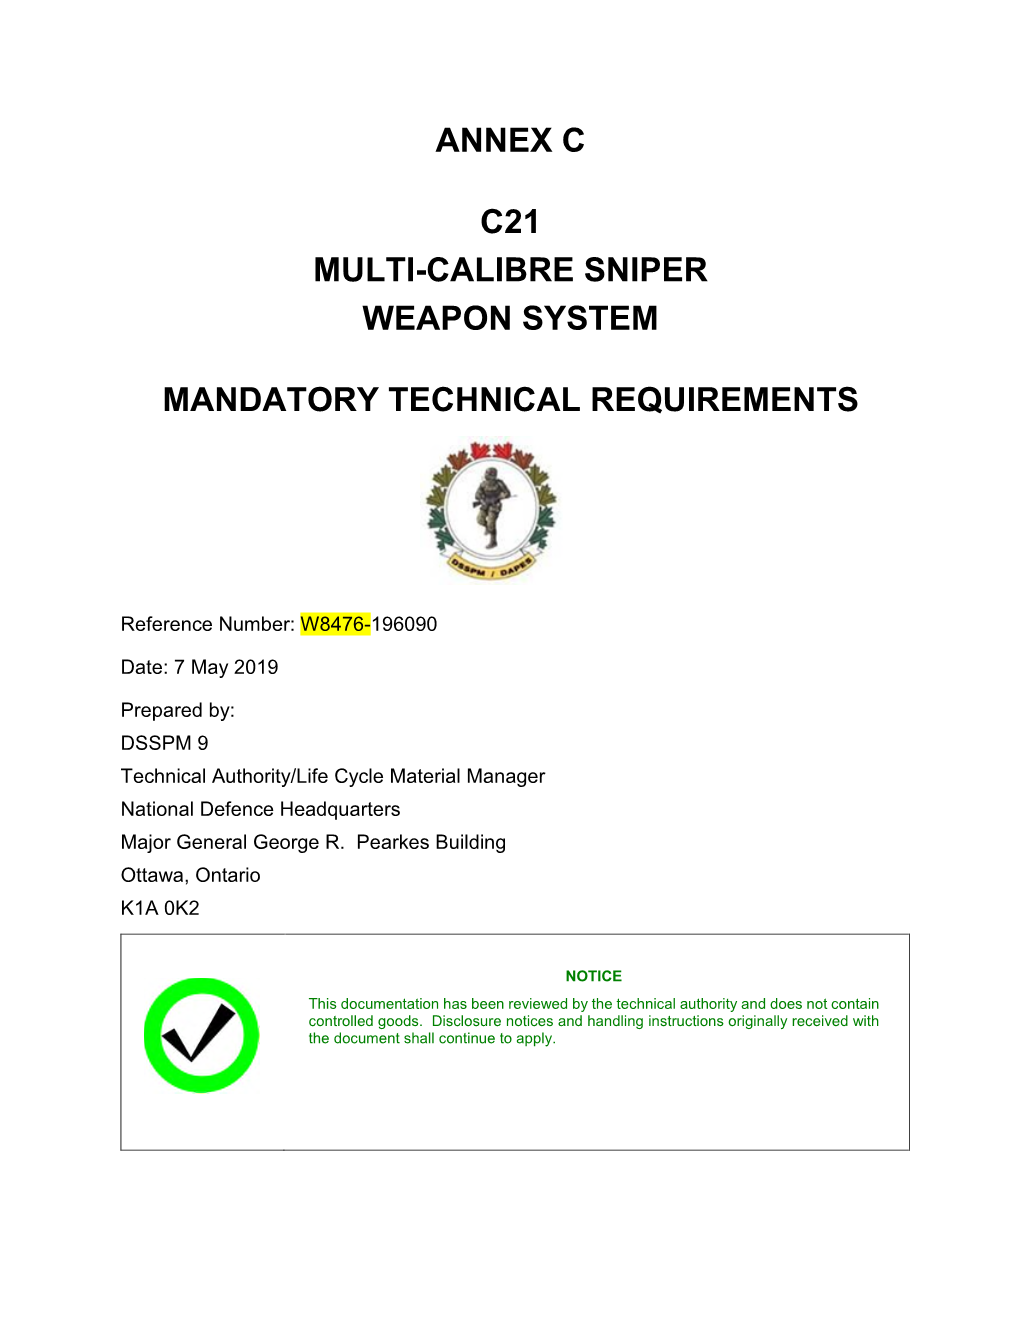 Annex C C21 Multi-Calibre Sniper Weapon System Mandatory